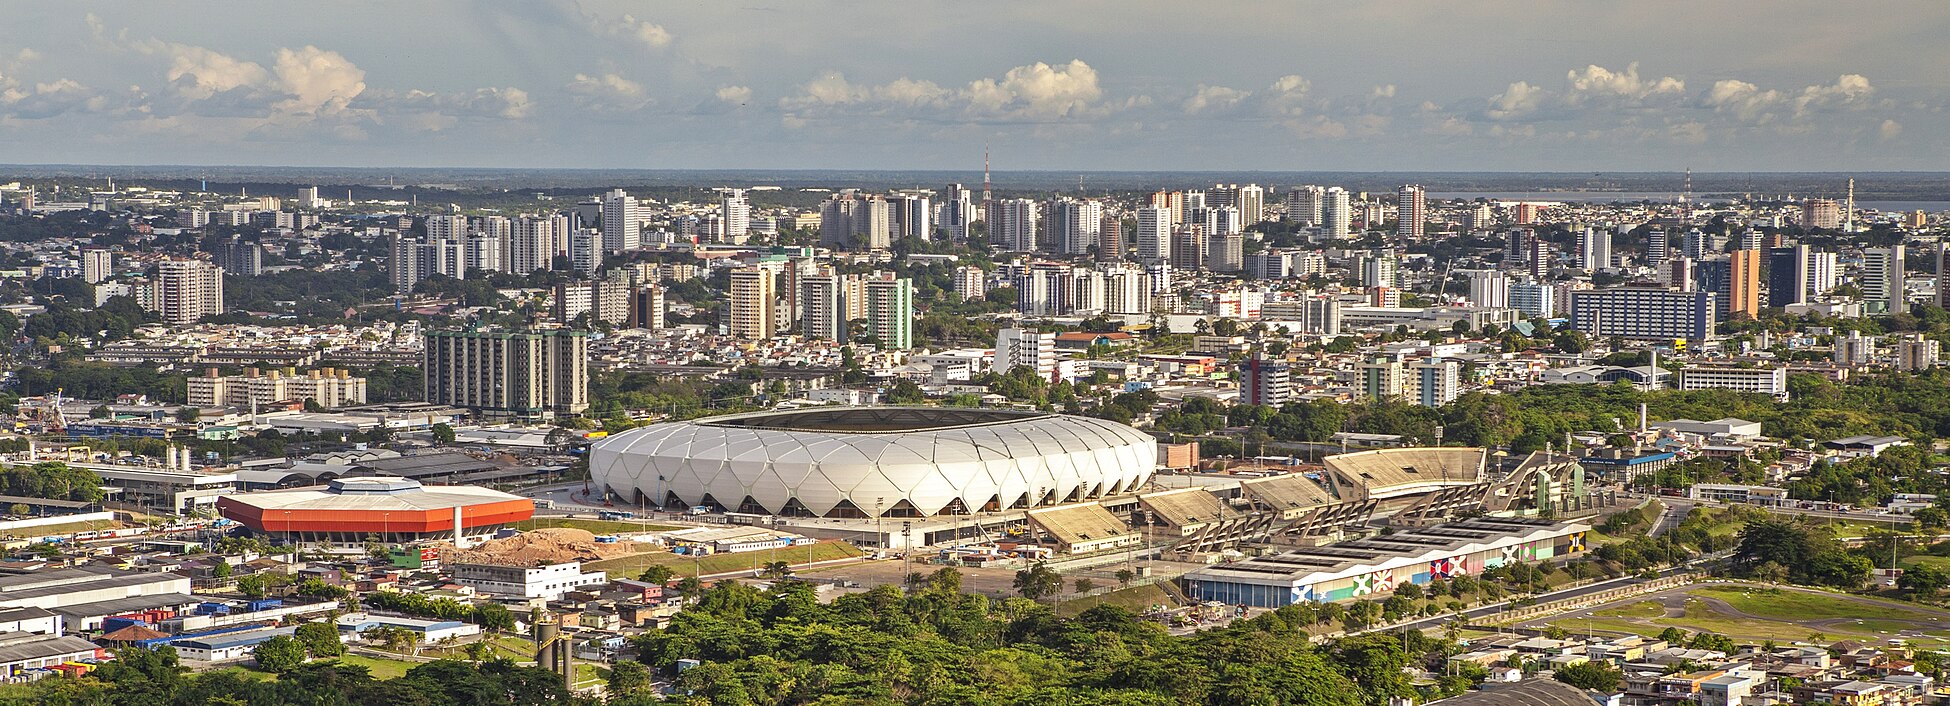 город манаус бразилия